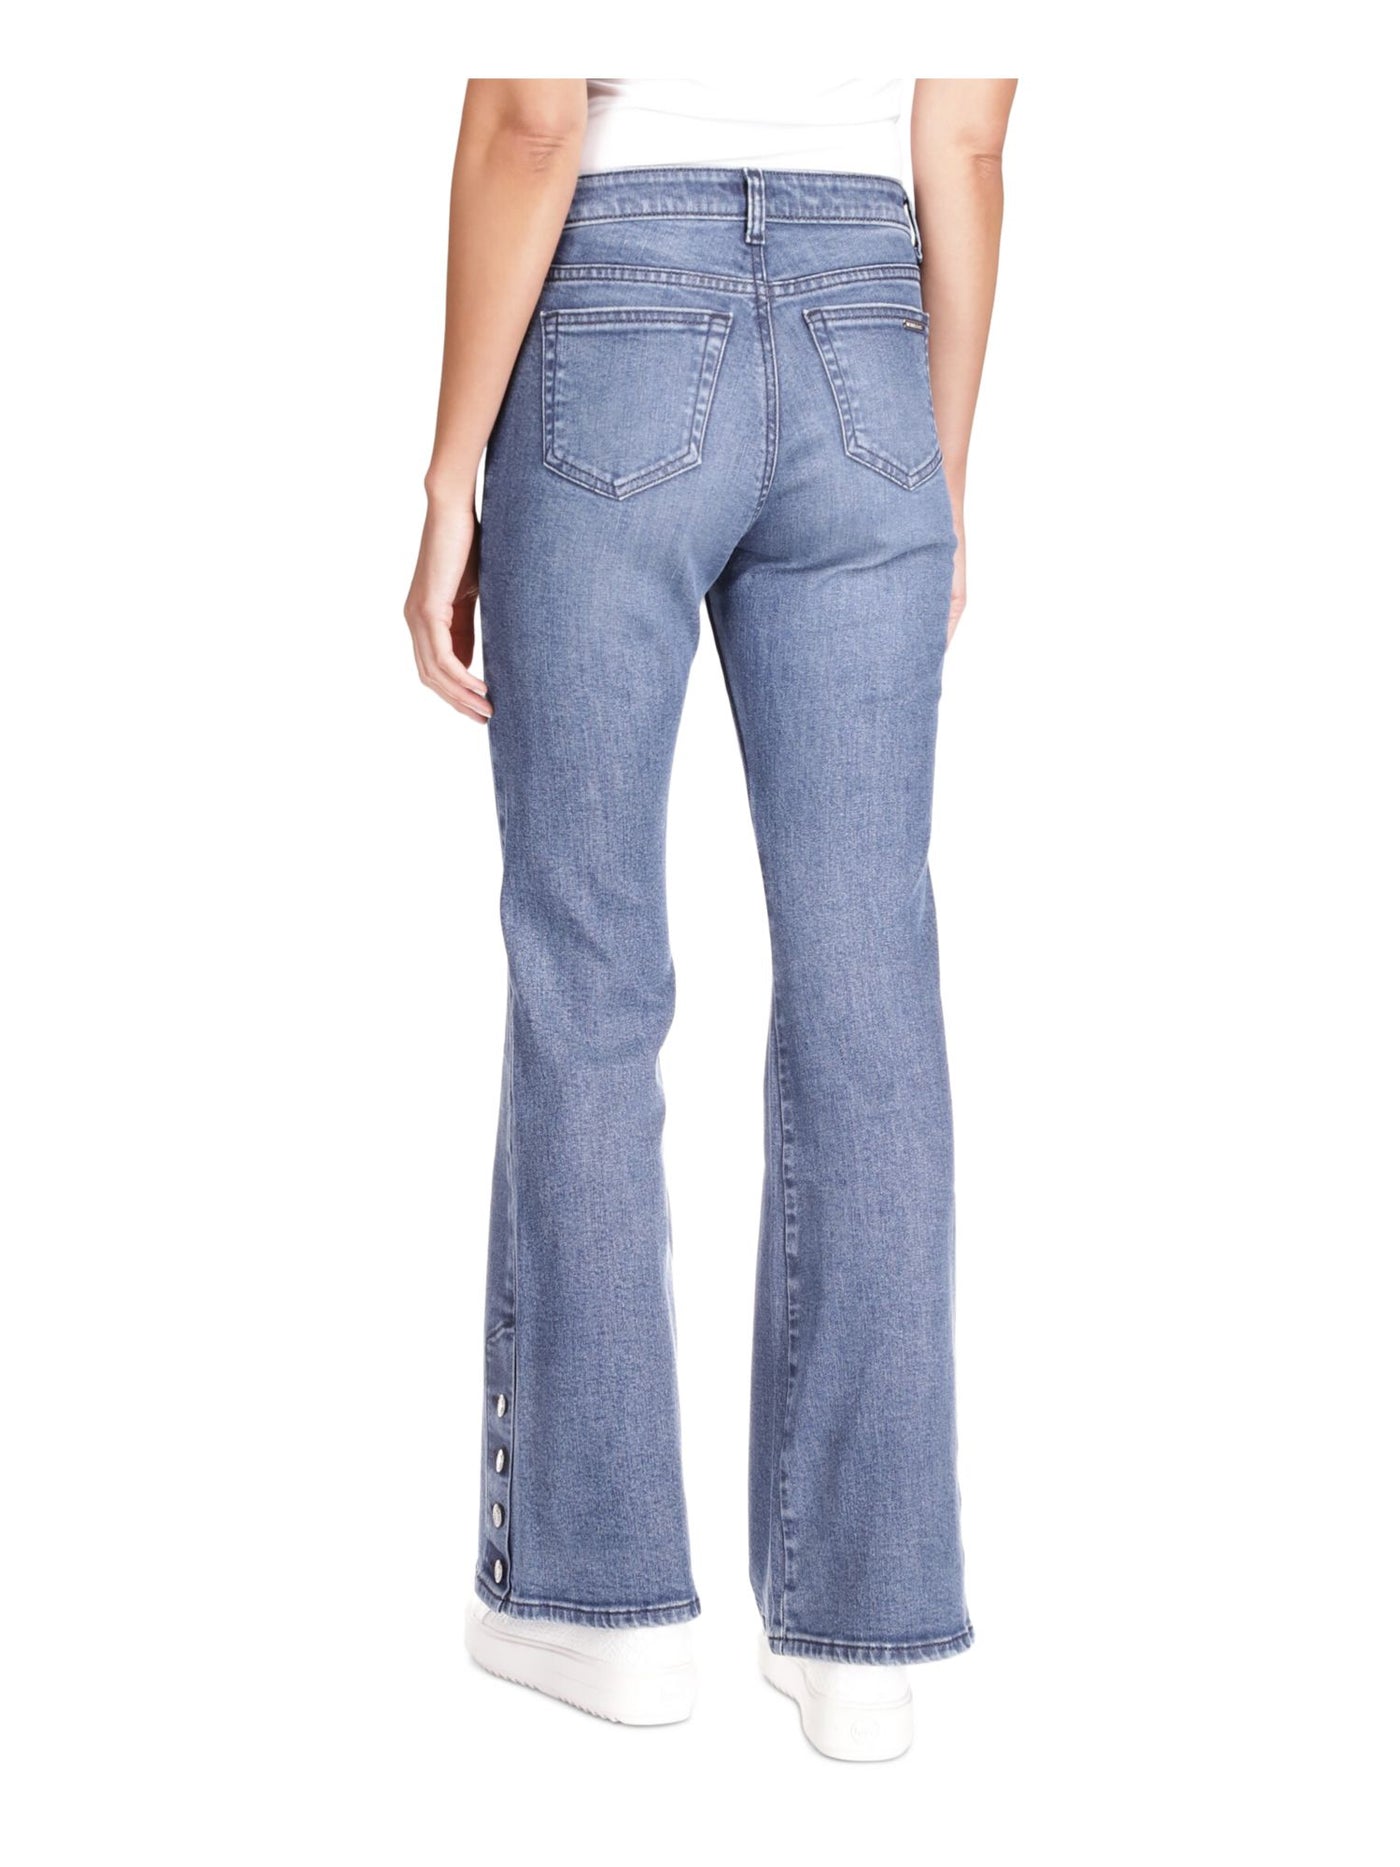 MICHAEL KORS Womens Blue Zippered Pocketed Button-hem Flare Leg High Waist Jeans Petites 10P